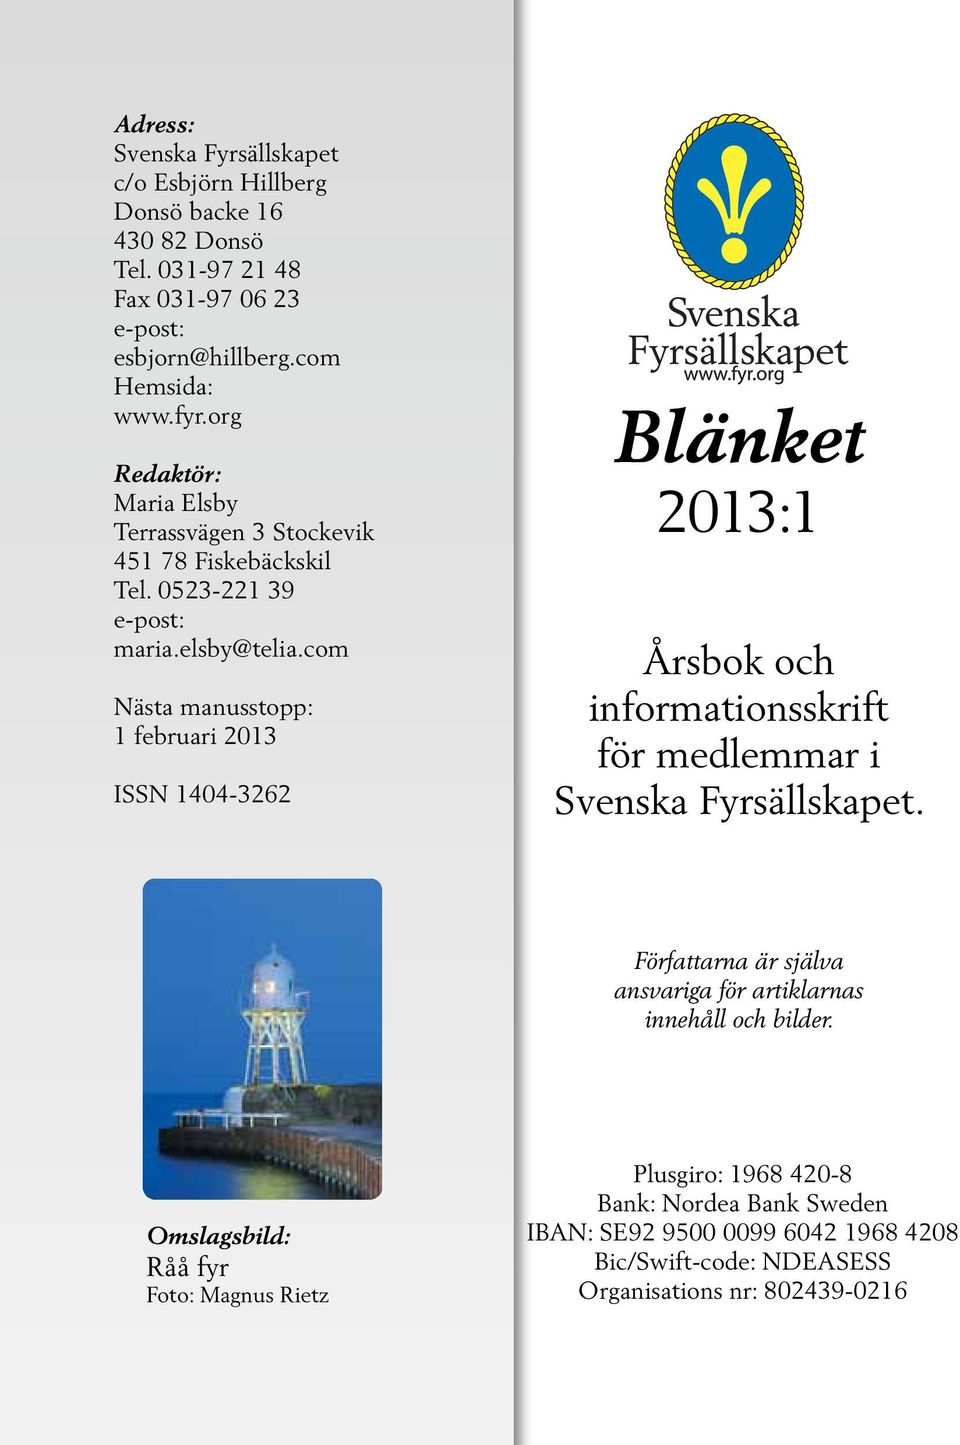 com Nästa manusstopp: 1 februari 2013 ISSN 1404-3262 Blänket 2013:1 Årsbok och informationsskrift för medlemmar i Svenska Fyrsällskapet.